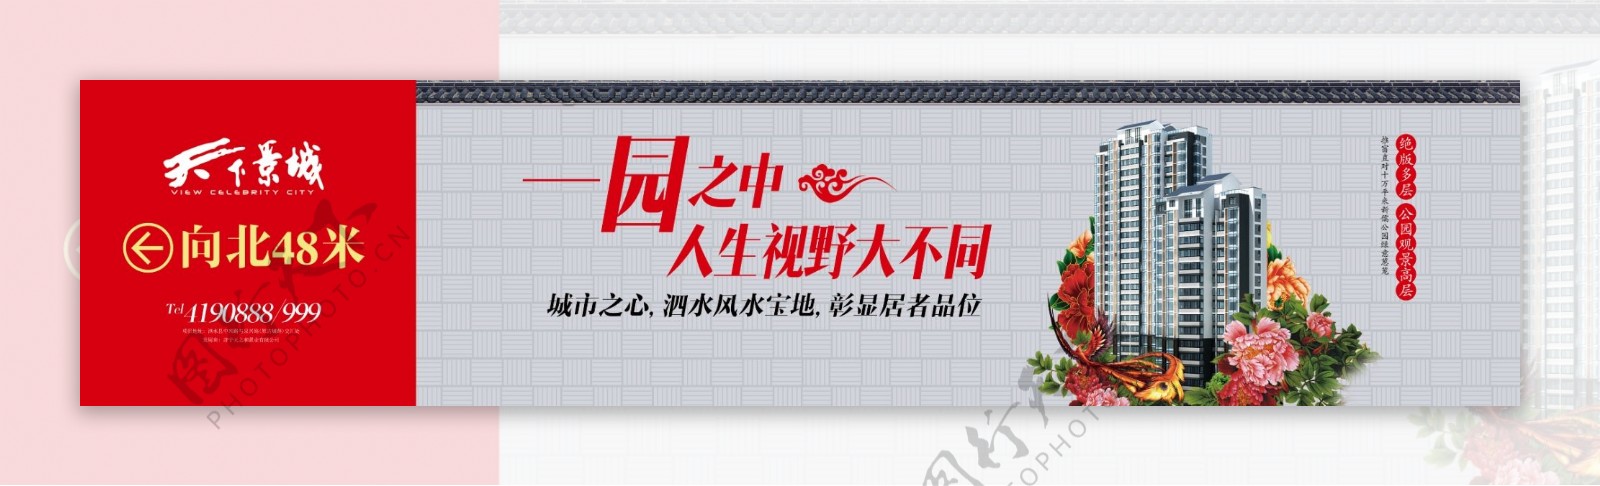 中式房地产围栏广告图片